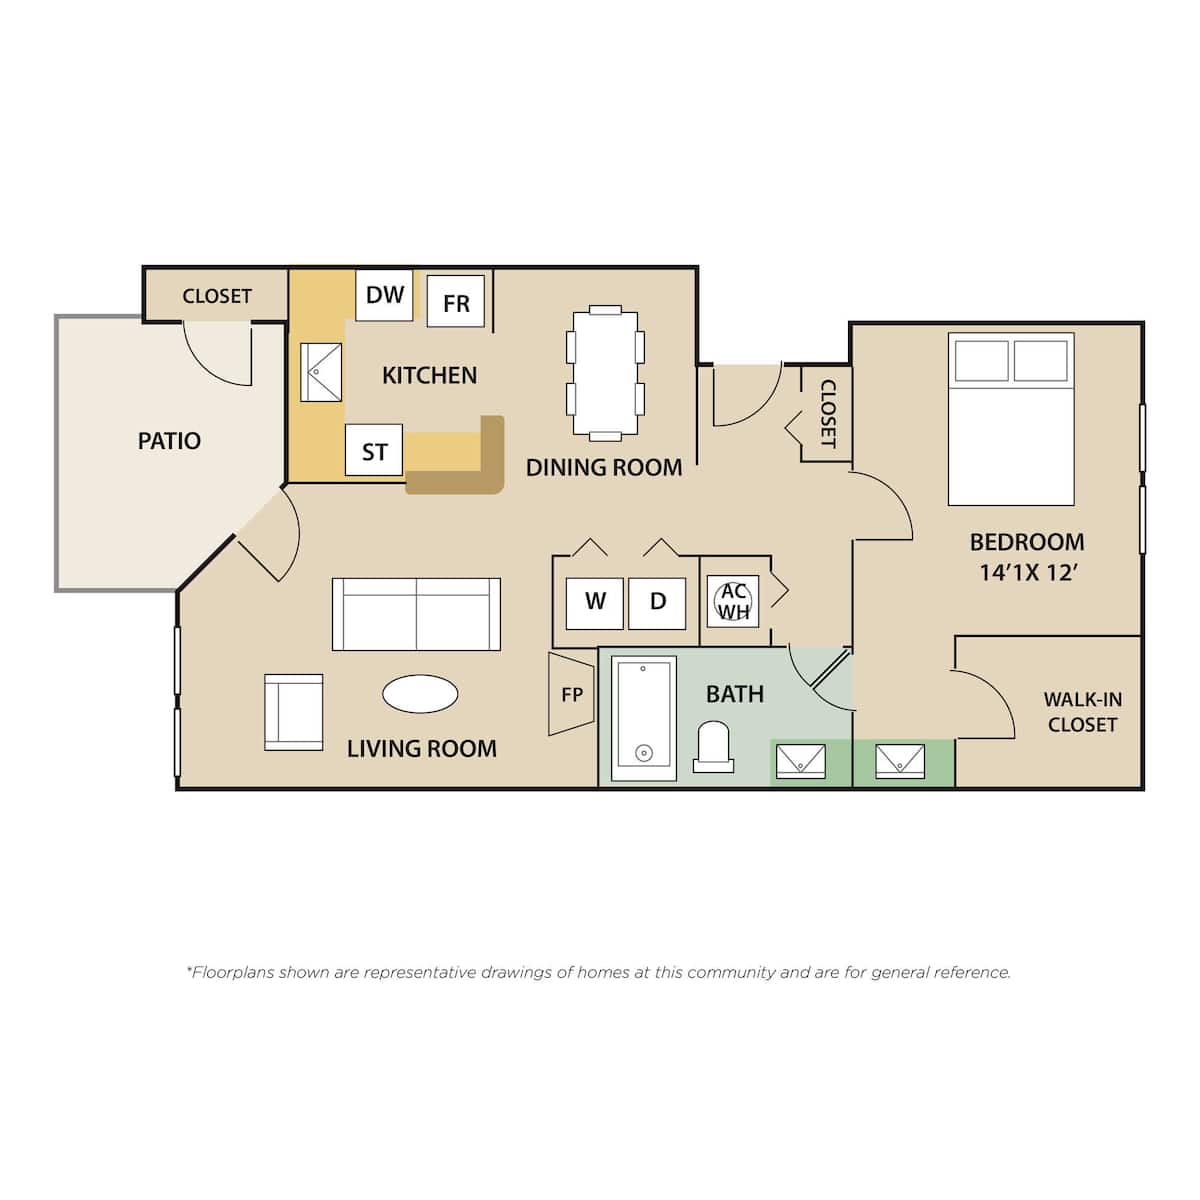 Floorplan diagram for Westbrook, showing 1 bedroom